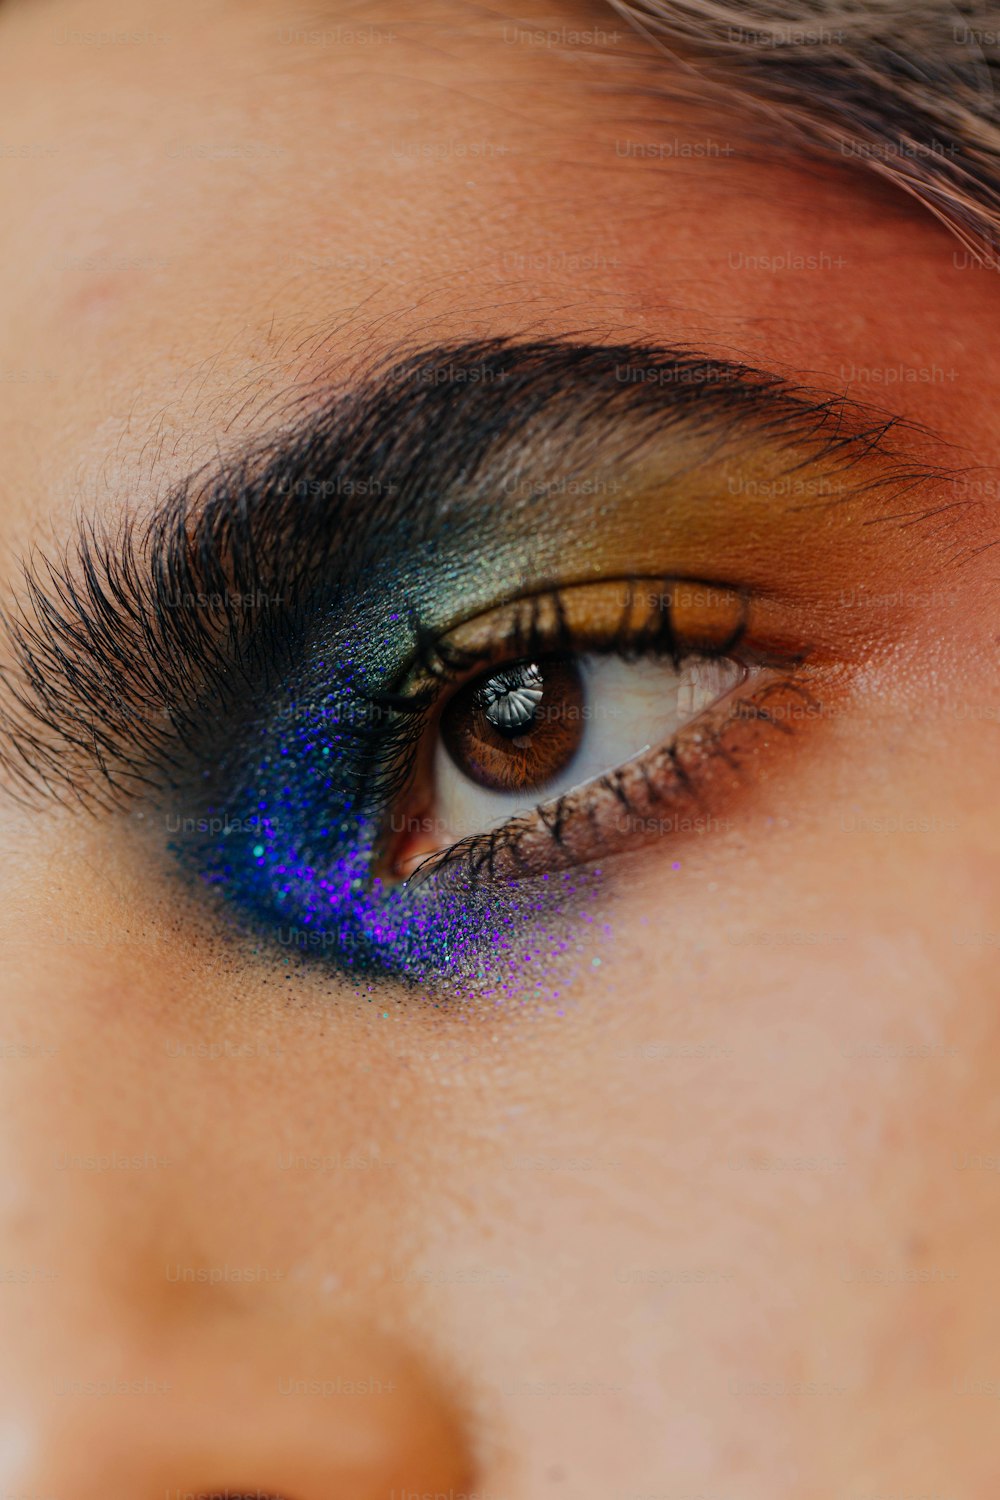 um close up do olho de uma pessoa com uma sombra azul e amarela